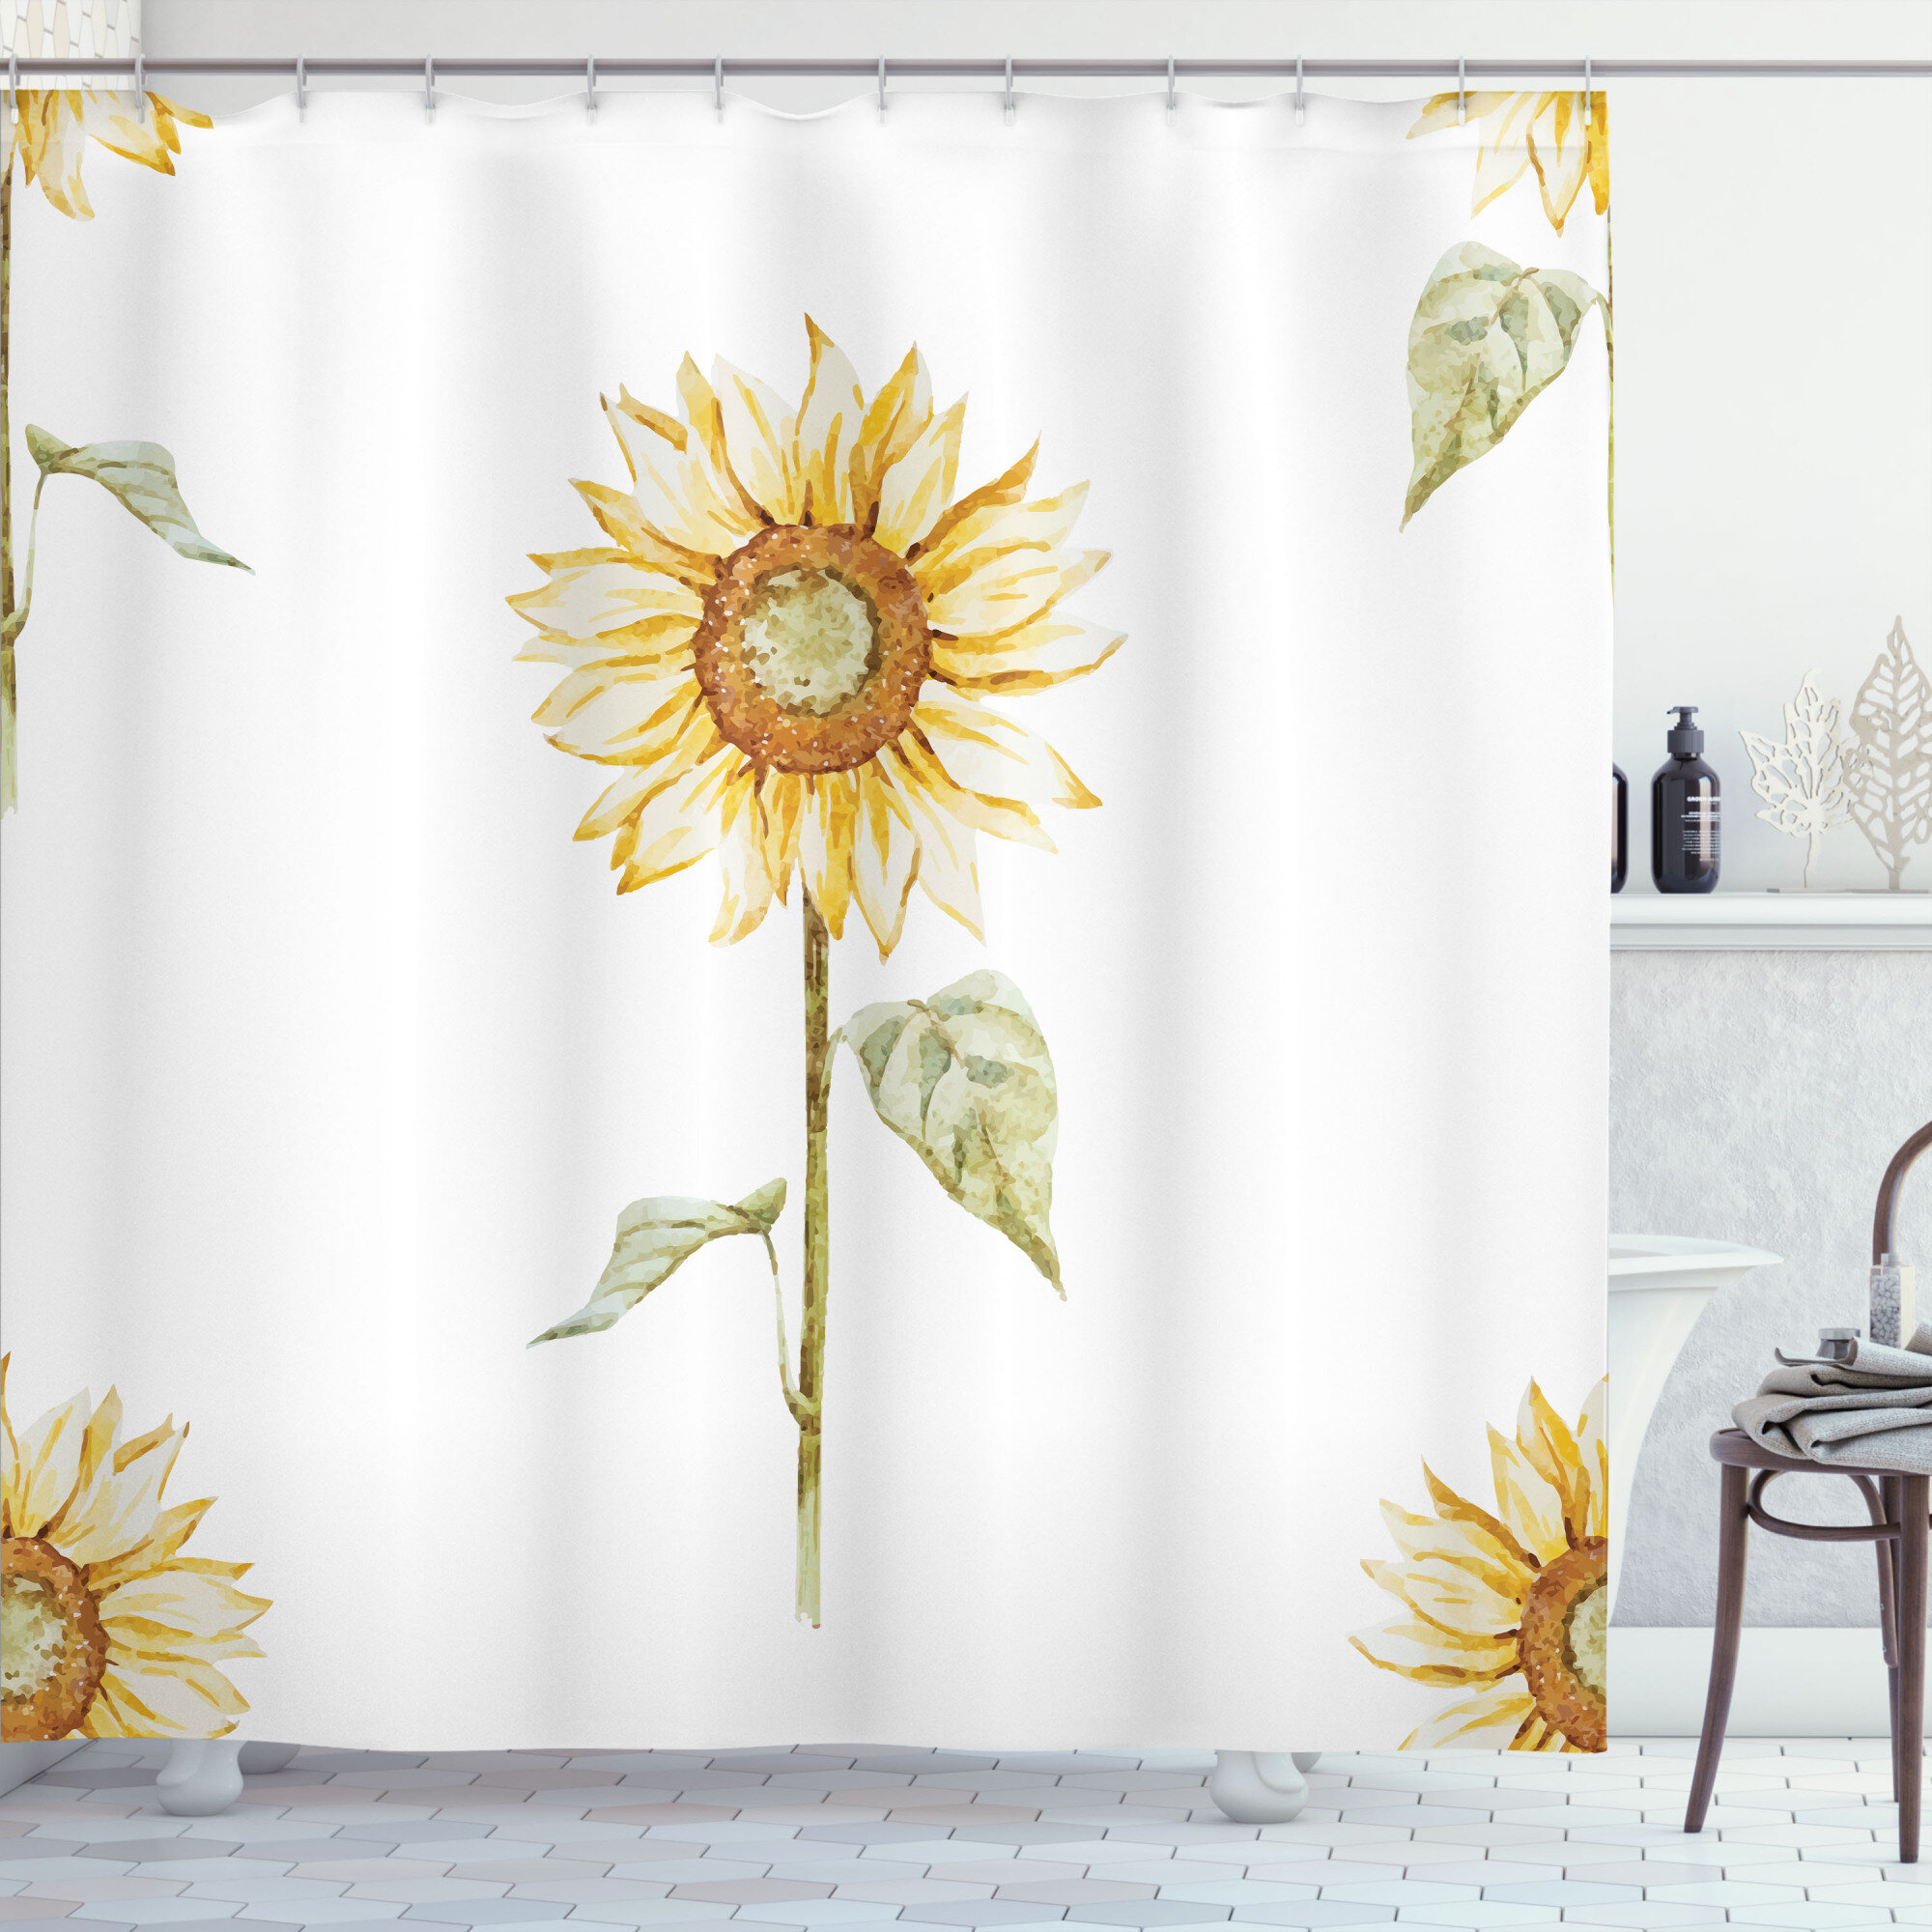 Waterproof Fabric Shower Curtain Hooks Bathroom Mat Sunflower Home Decor 